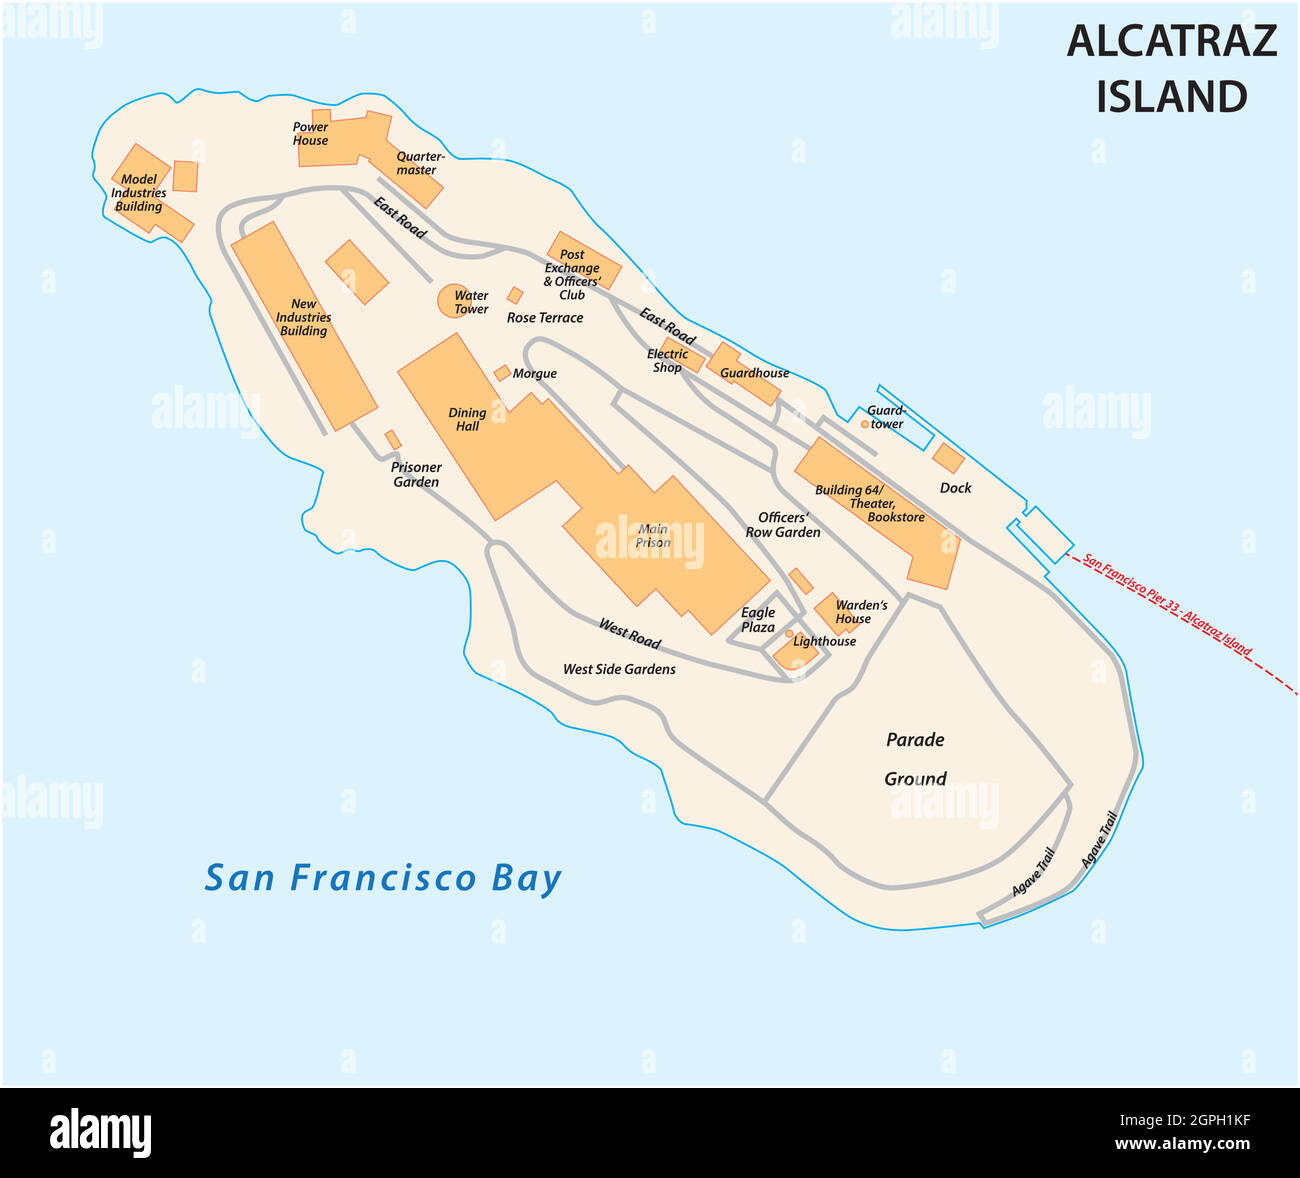 Mappa vettoriale dell'ex isola carceraria californiana di Alcatraz Illustrazione Vettoriale